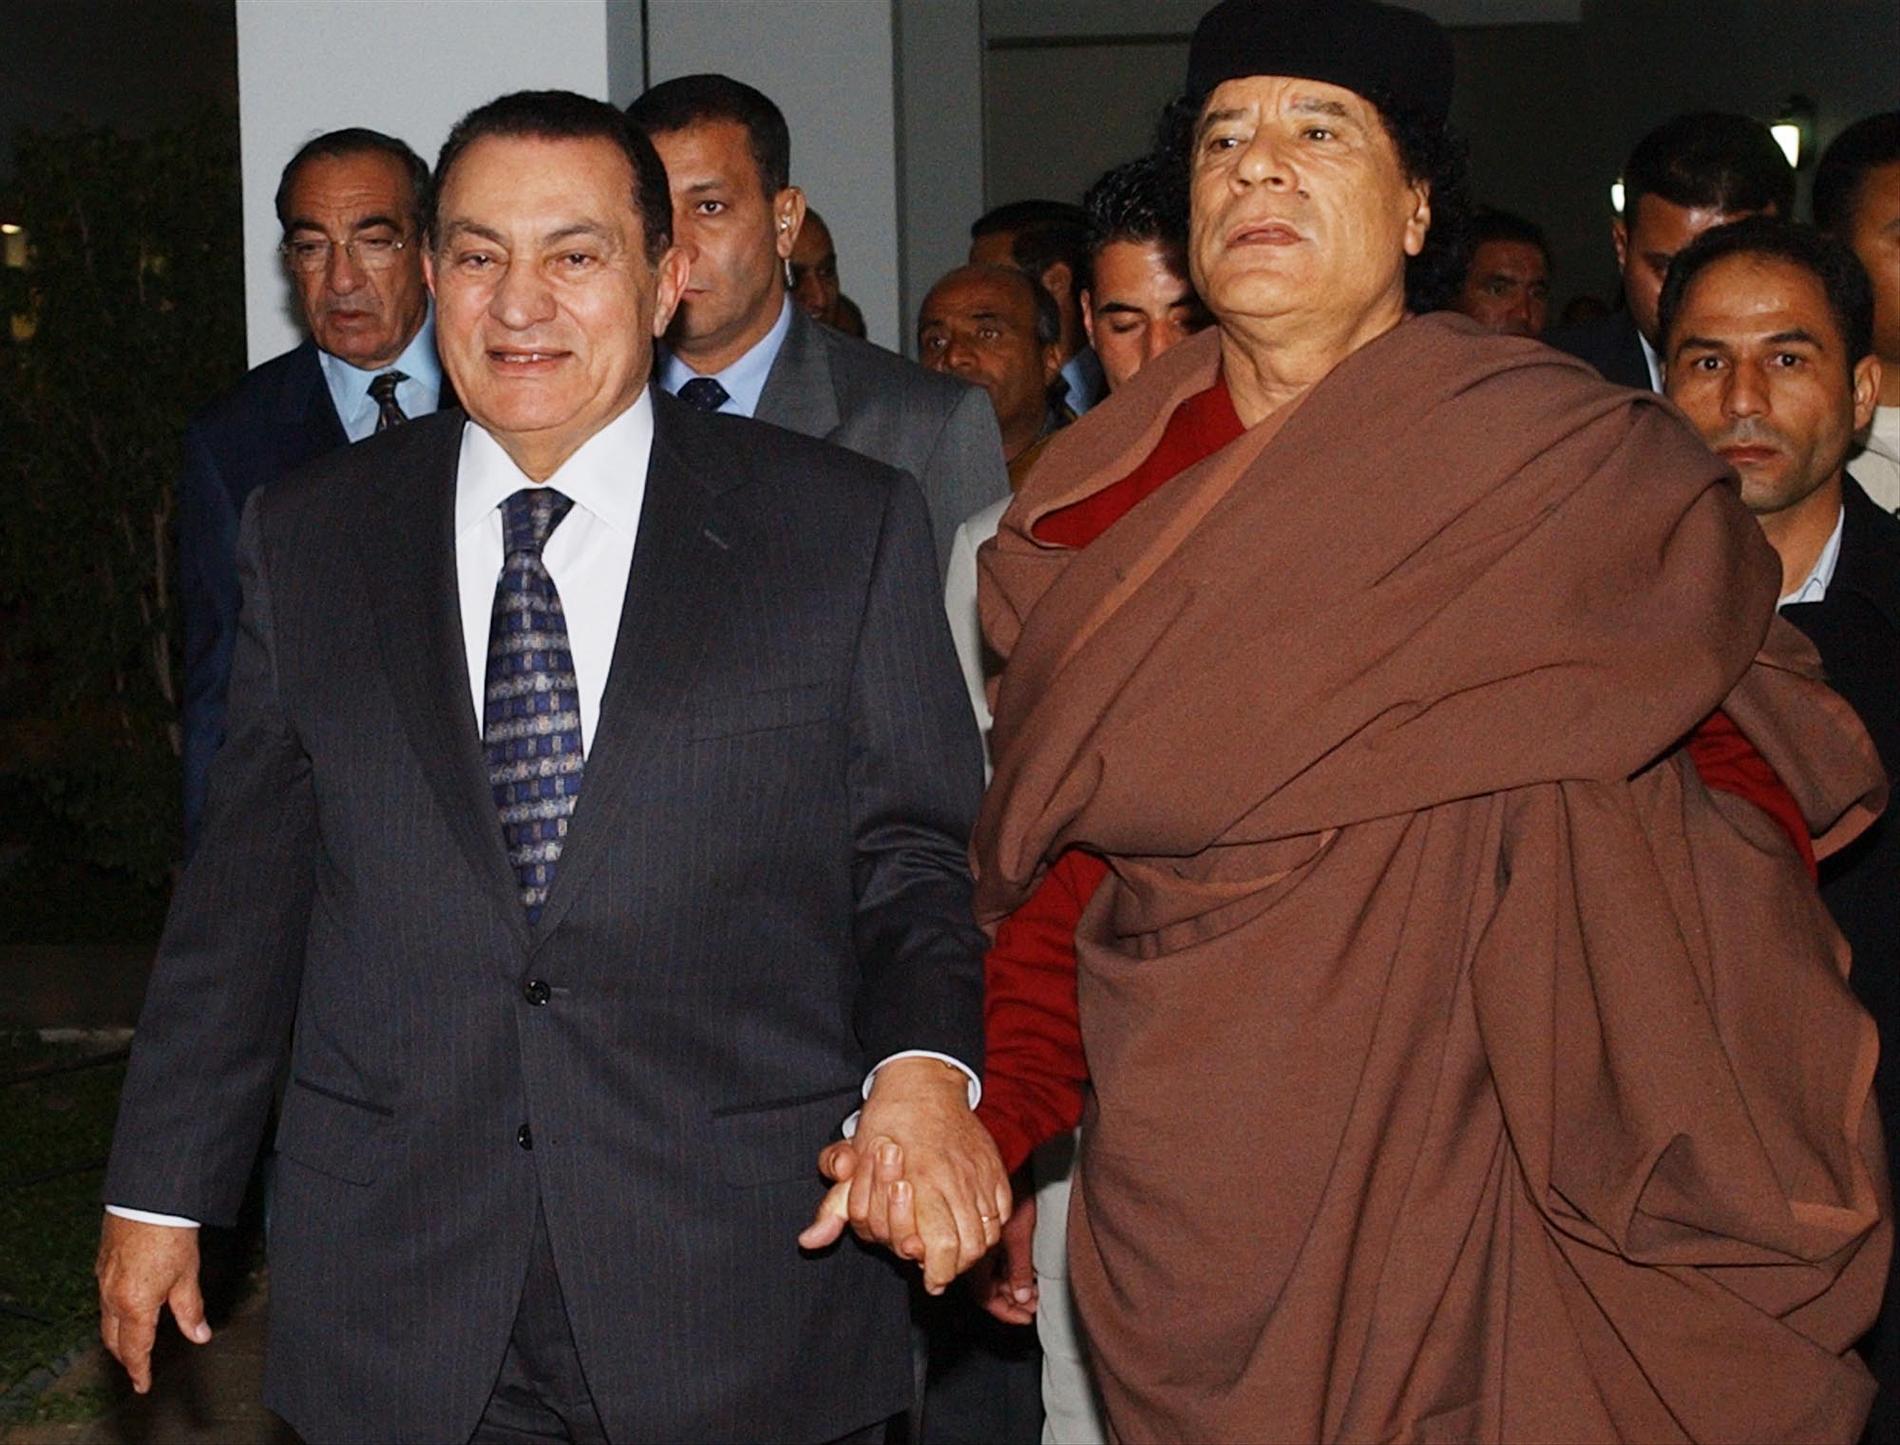 En annan världsledare som flera gånger träffat Gaddafi är Hosni Mubarak, Egyptens president.